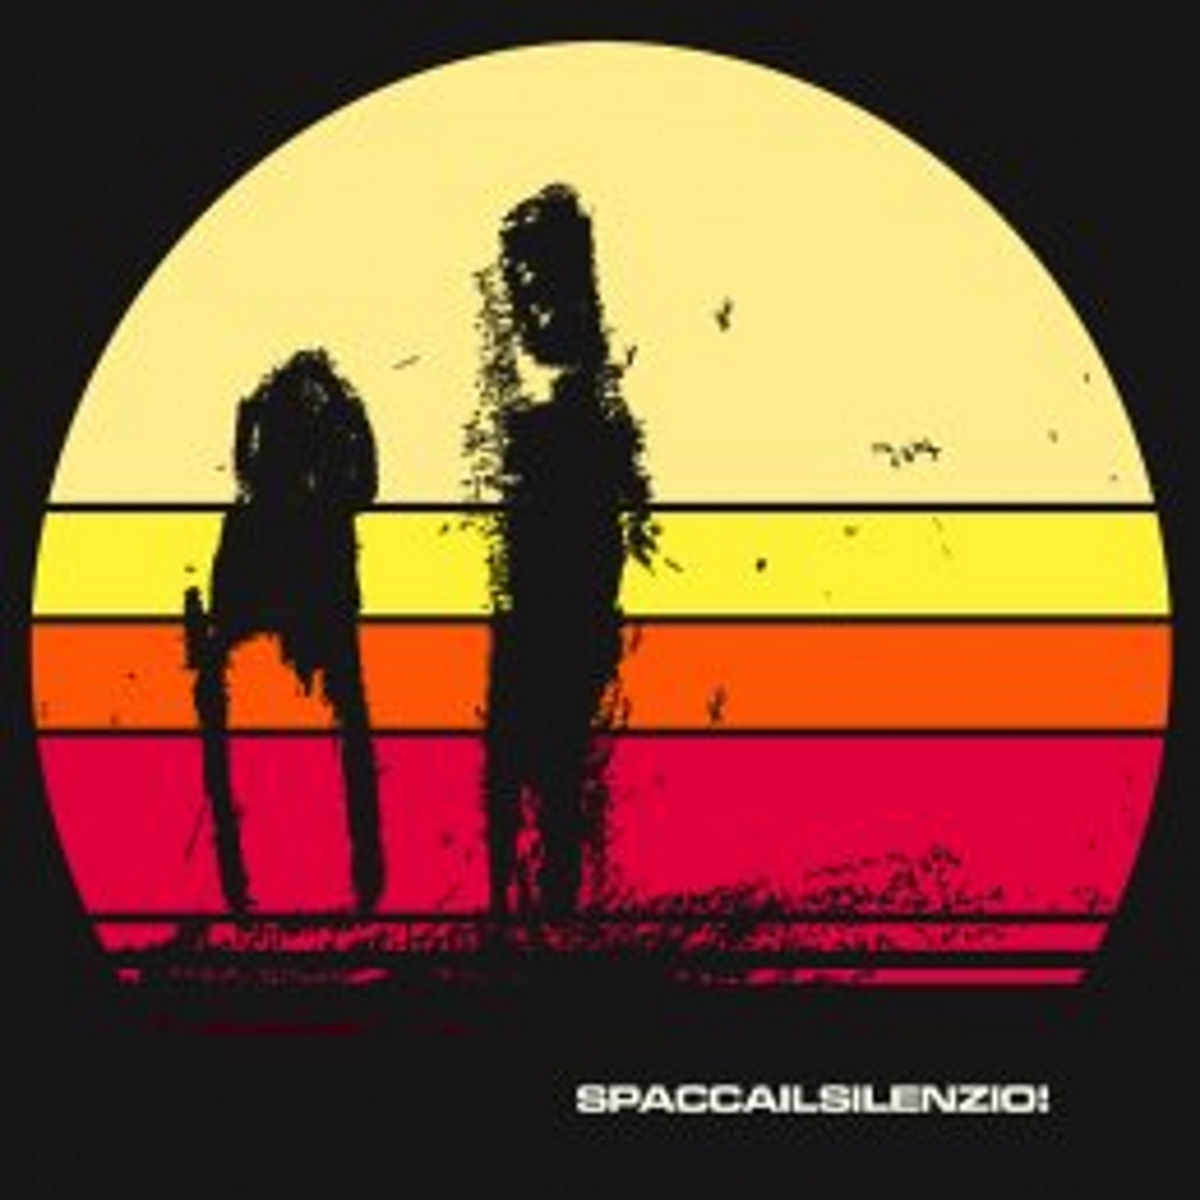 SPACCA IL SILENZIO! “Luoghi comuni” è il nuovo brano del folk street duo capace di legare rap, musica elettronica ed un sound in gran parte realizzato con strumenti inusuali